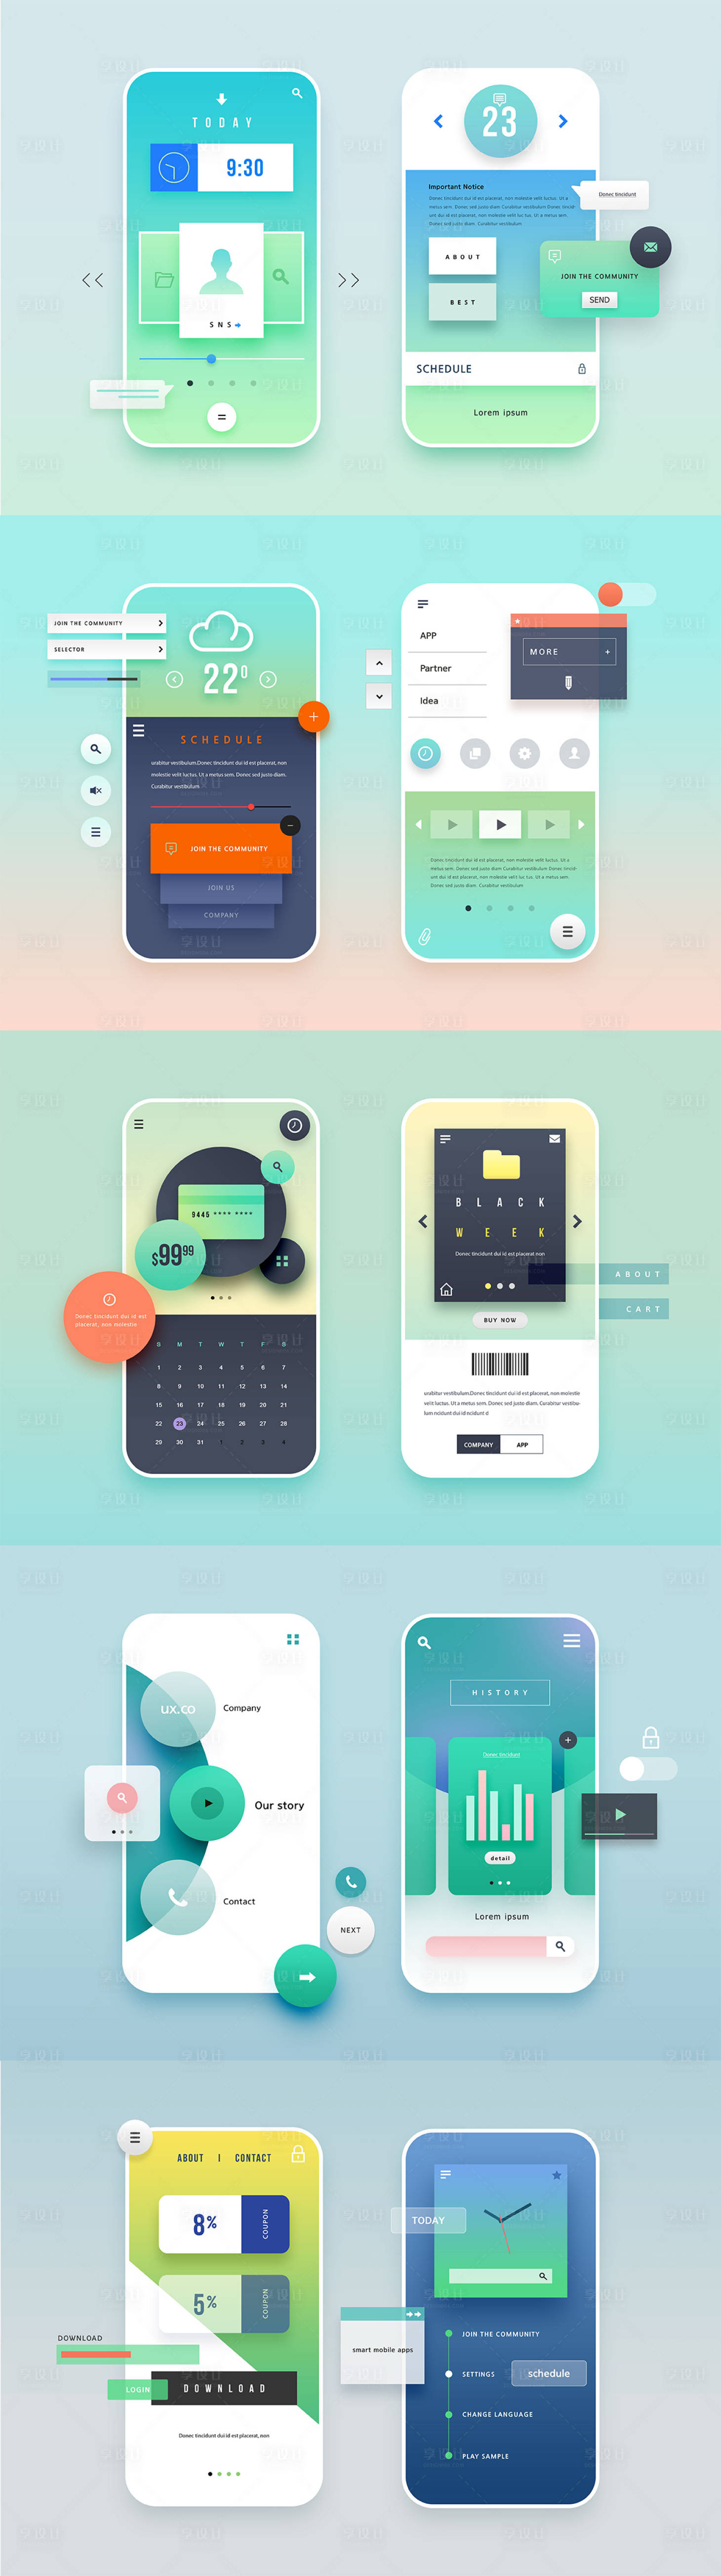 小清新app设计ui设计界面设计1绿色色/青色色psd其他设计作品素材免费